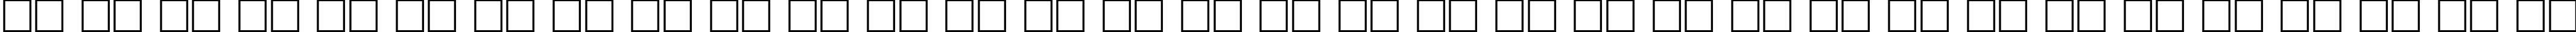 Пример написания русского алфавита шрифтом DG_Kabel